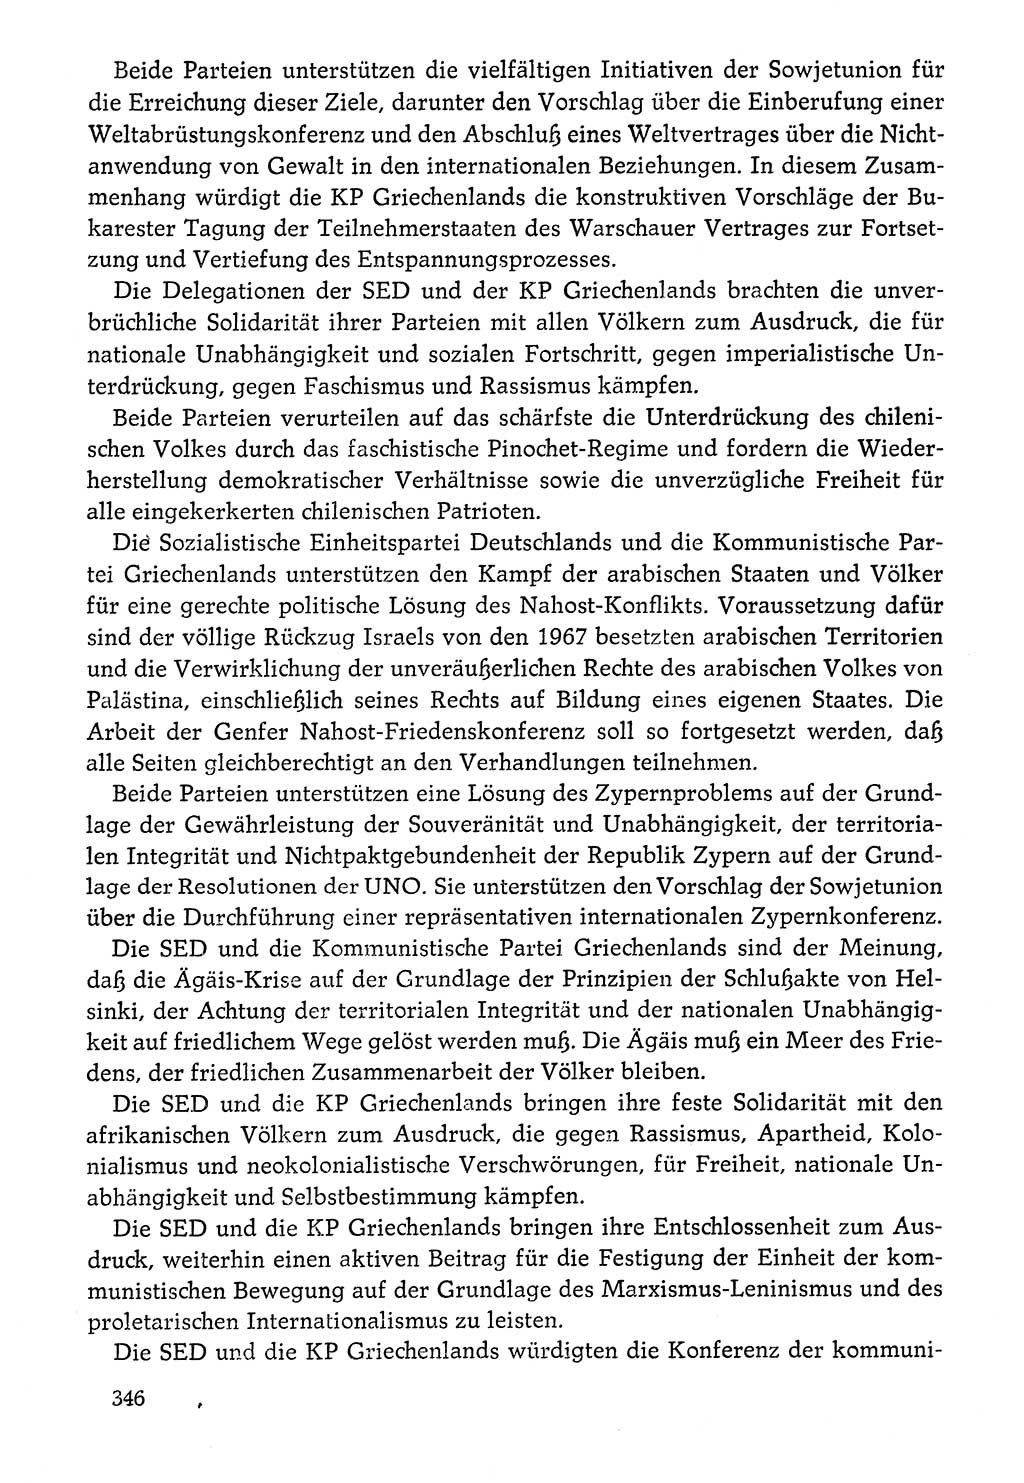 Dokumente der Sozialistischen Einheitspartei Deutschlands (SED) [Deutsche Demokratische Republik (DDR)] 1976-1977, Seite 346 (Dok. SED DDR 1976-1977, S. 346)